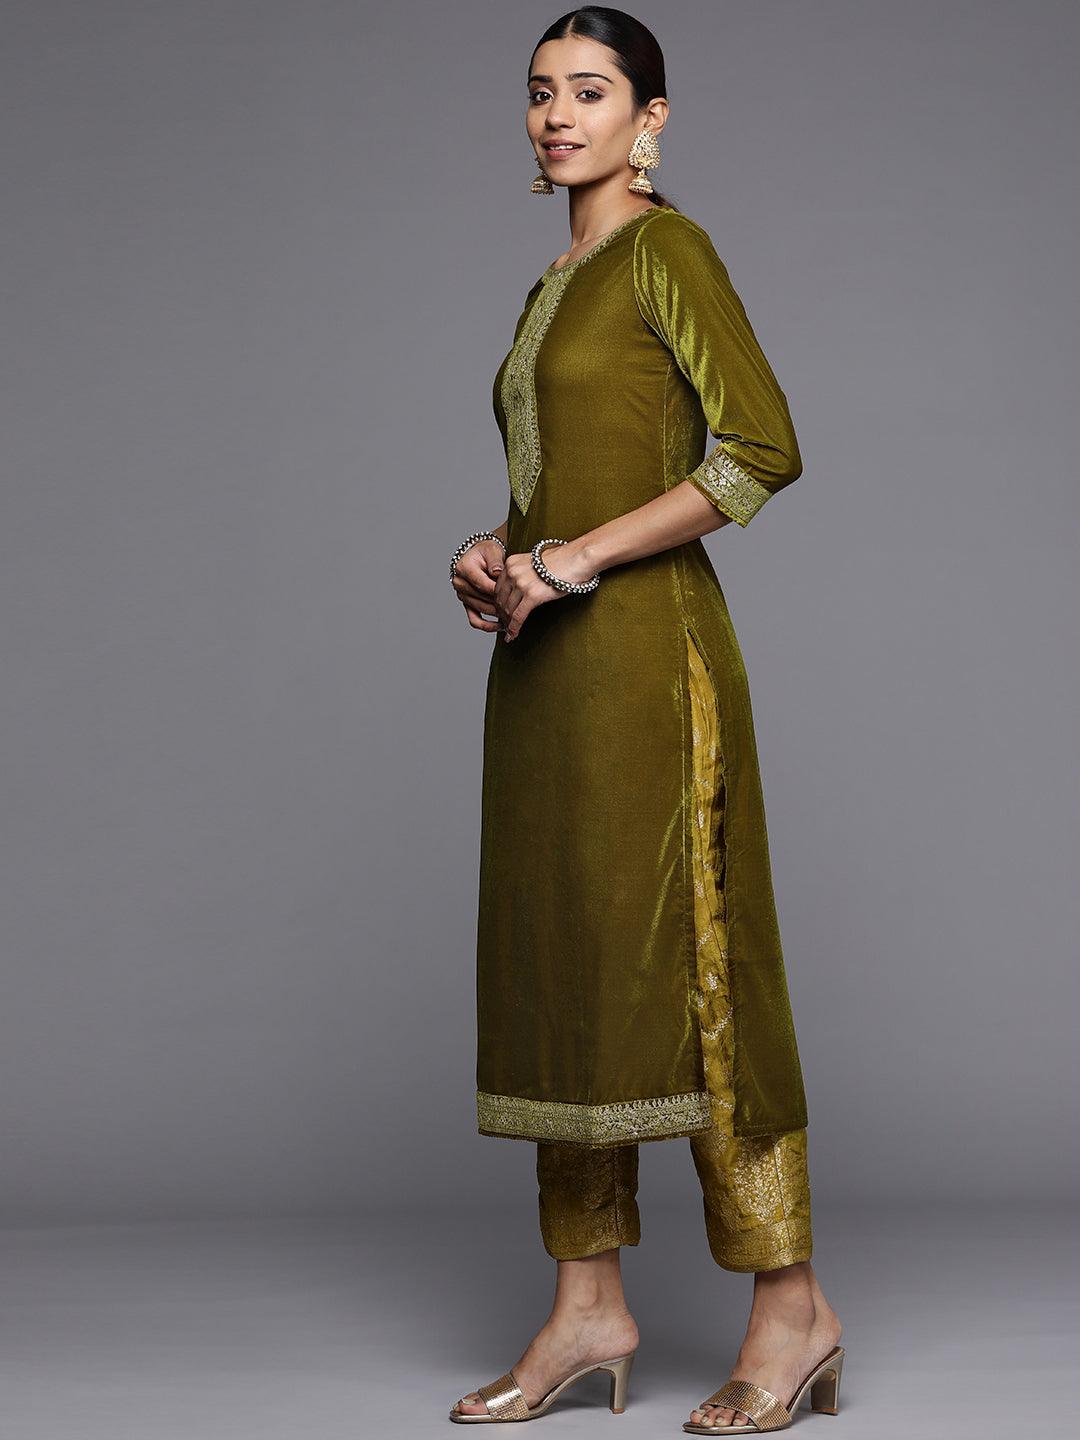 Olive Yoke Design Velvet Straight Suit Set - Libas